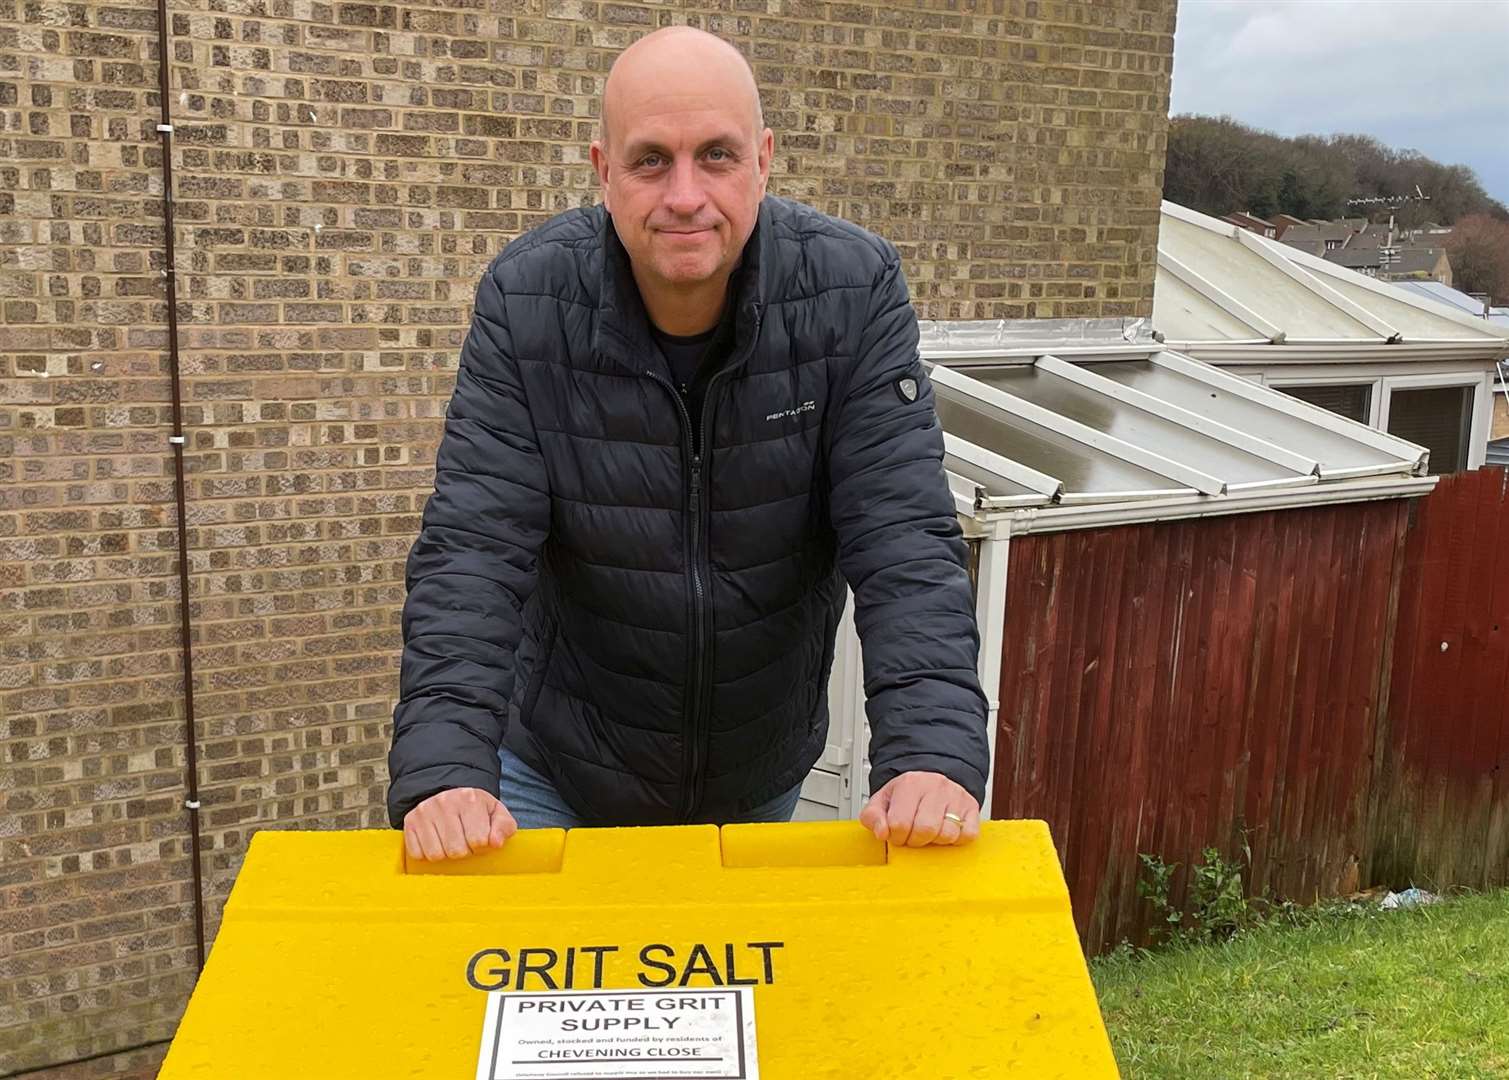 Matt Nolan has been campaigning for a salt bin in his road